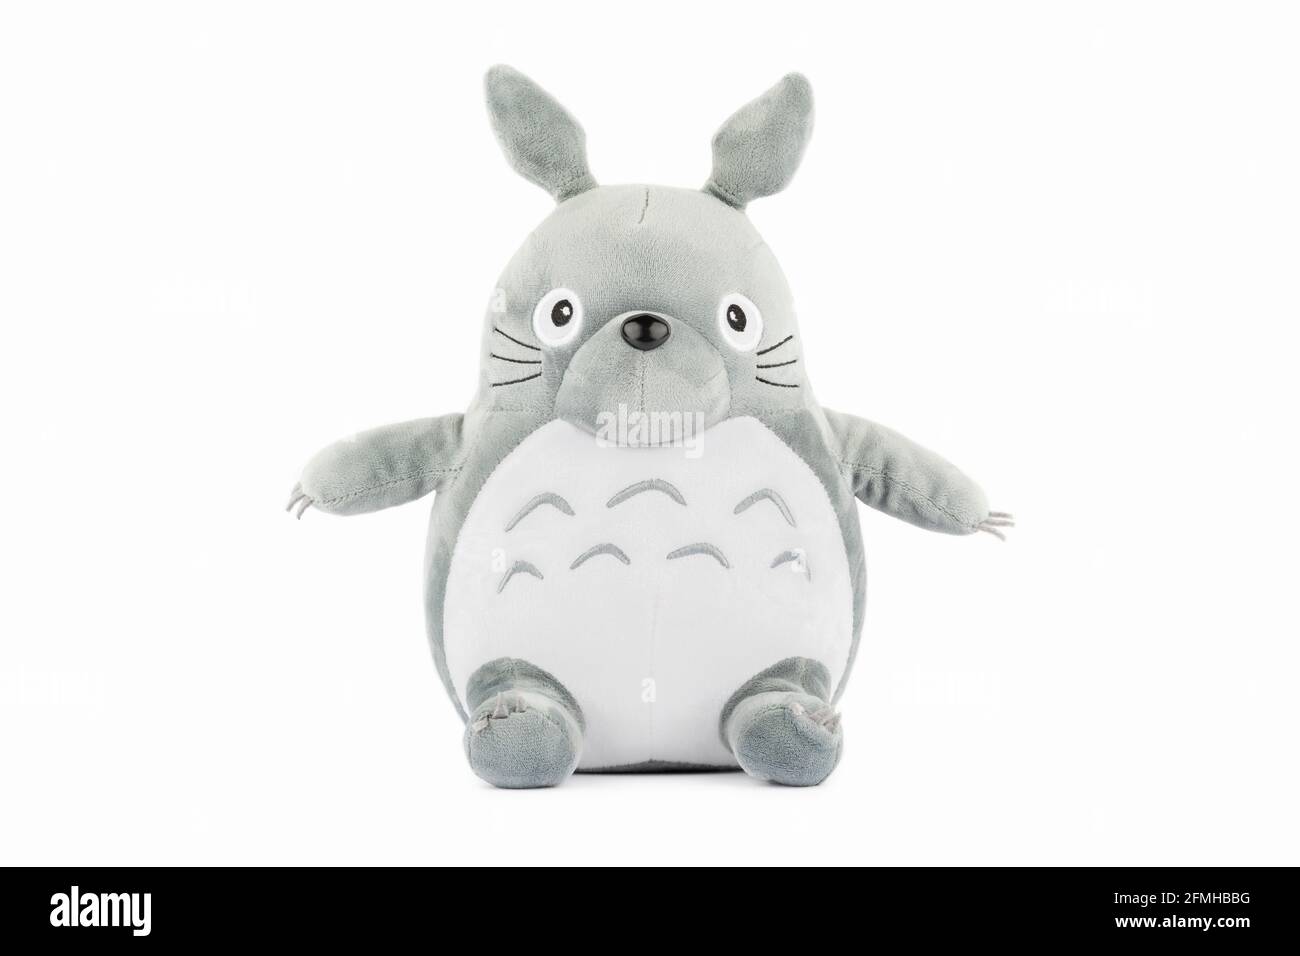 Un peluche giocattolo del personaggio Totoro dal film My Neighbor Totoro. Foto Stock